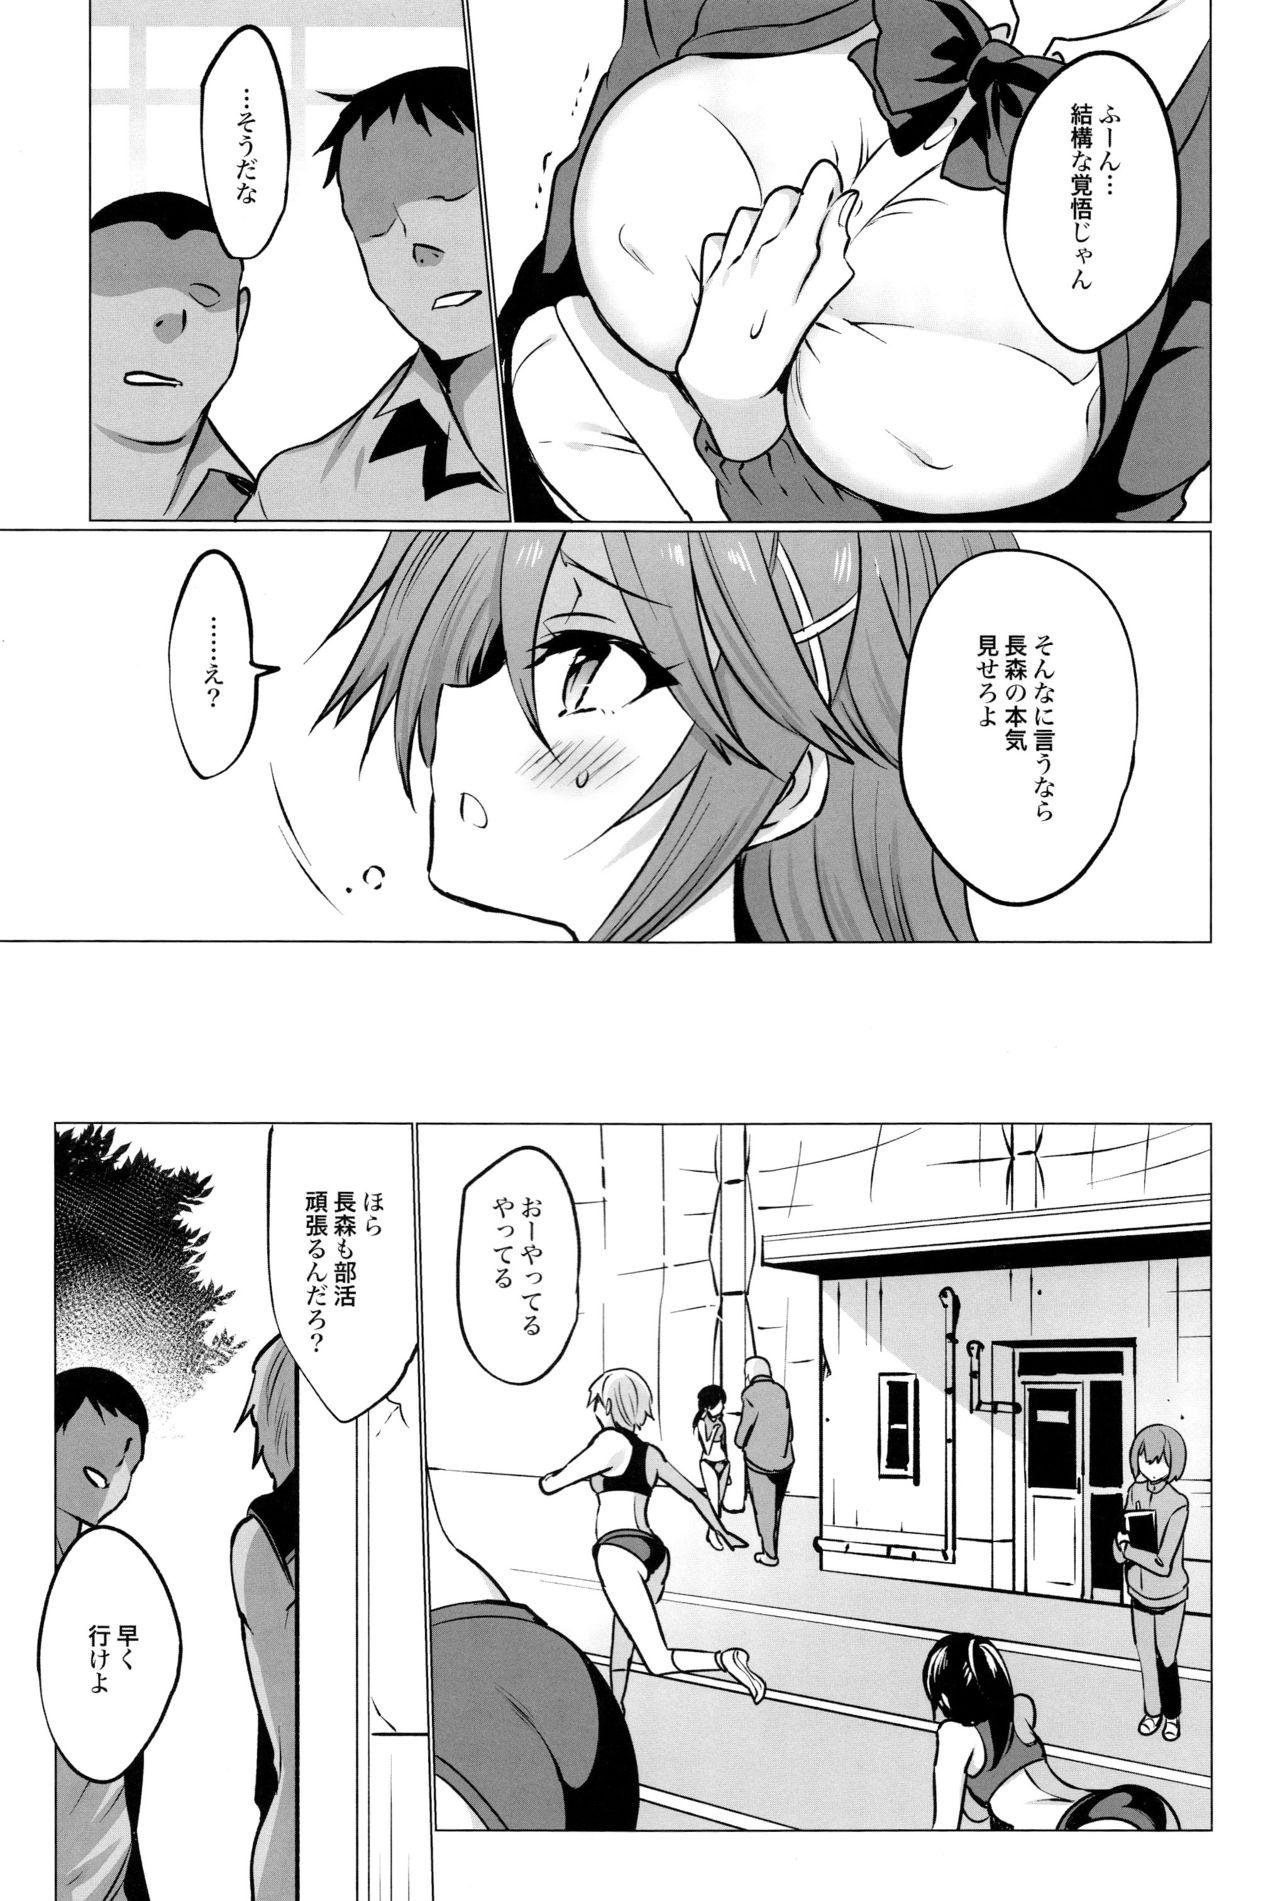 Chunky Gakkou de Seishun! 16 - Original Super - Page 7